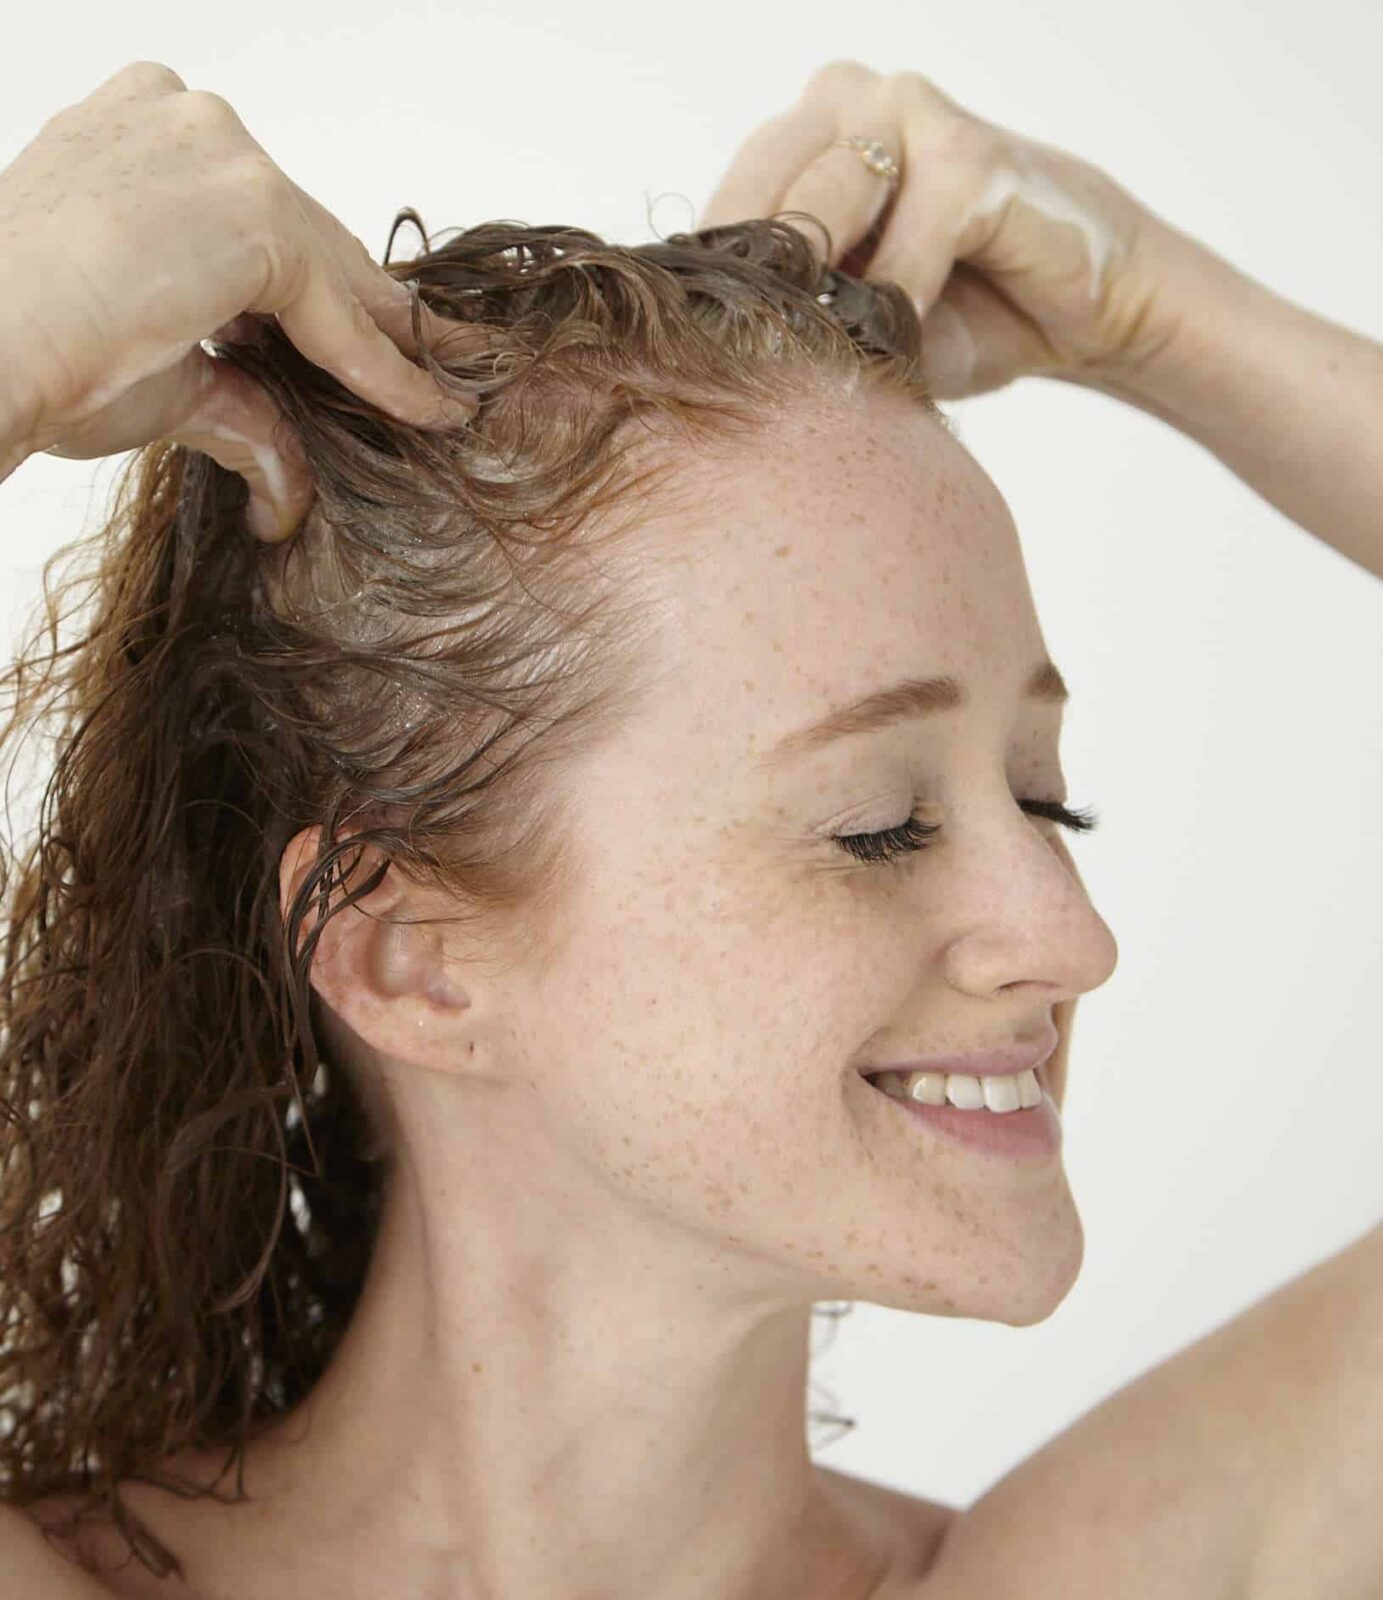 5 Shampoo Mistakes Every Redhead Should Avoid